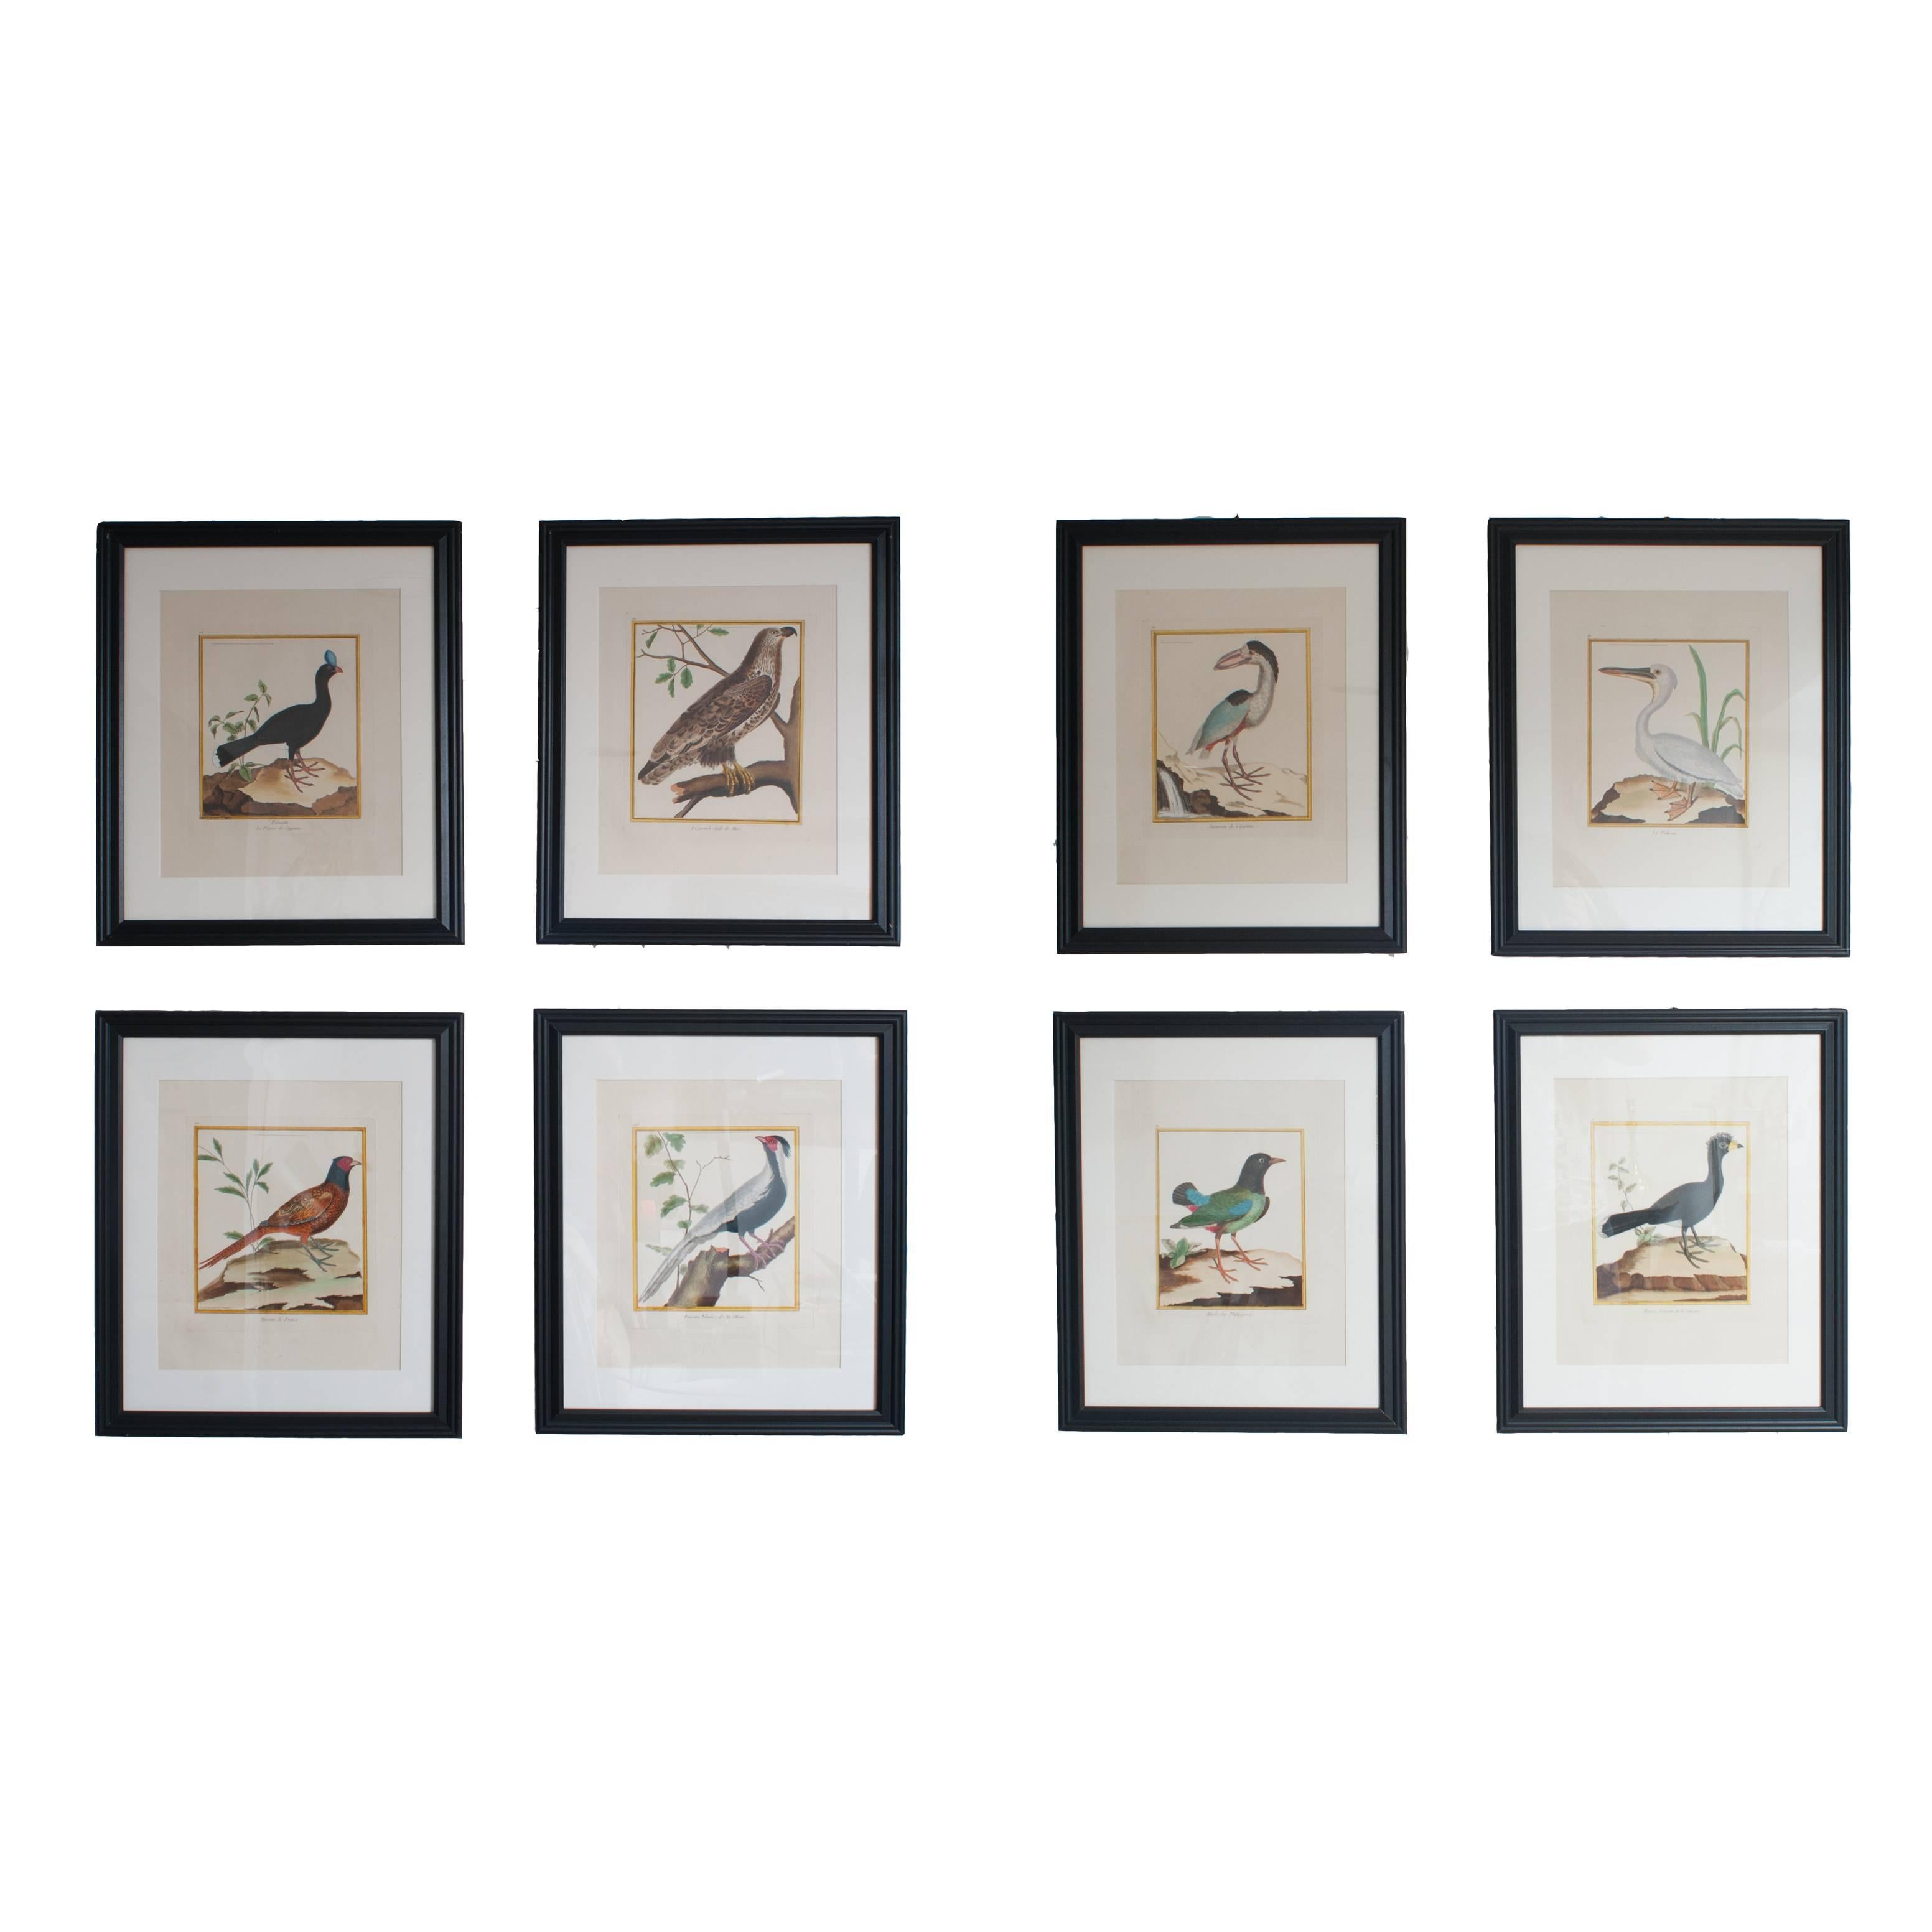 Sechs handkolorierte Gravuren von Vögeln in neuen Rahmen und mattiert. Von Martinet.